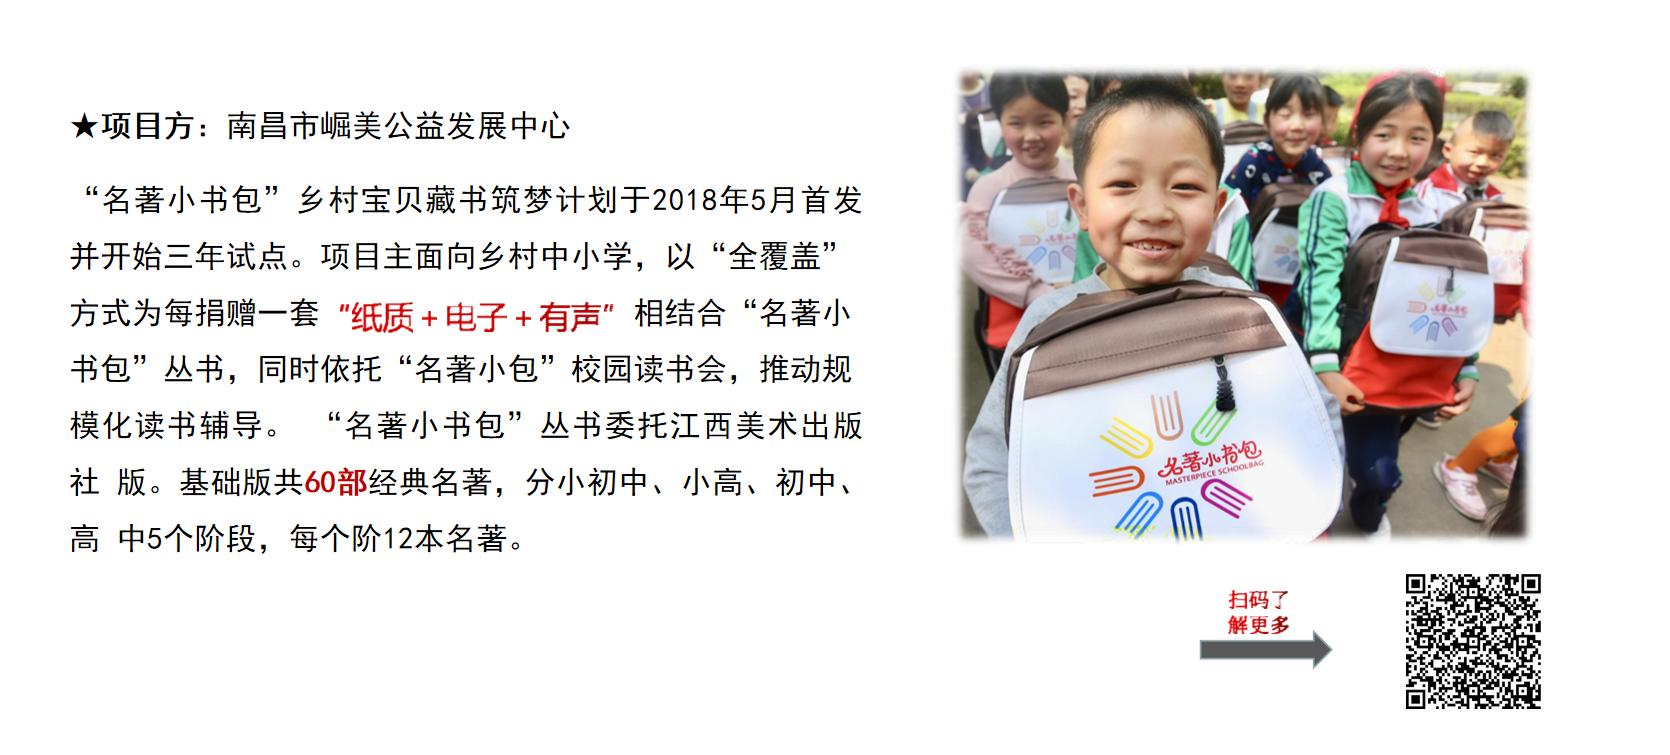 中国公益慈善项目大赛百强联合募捐